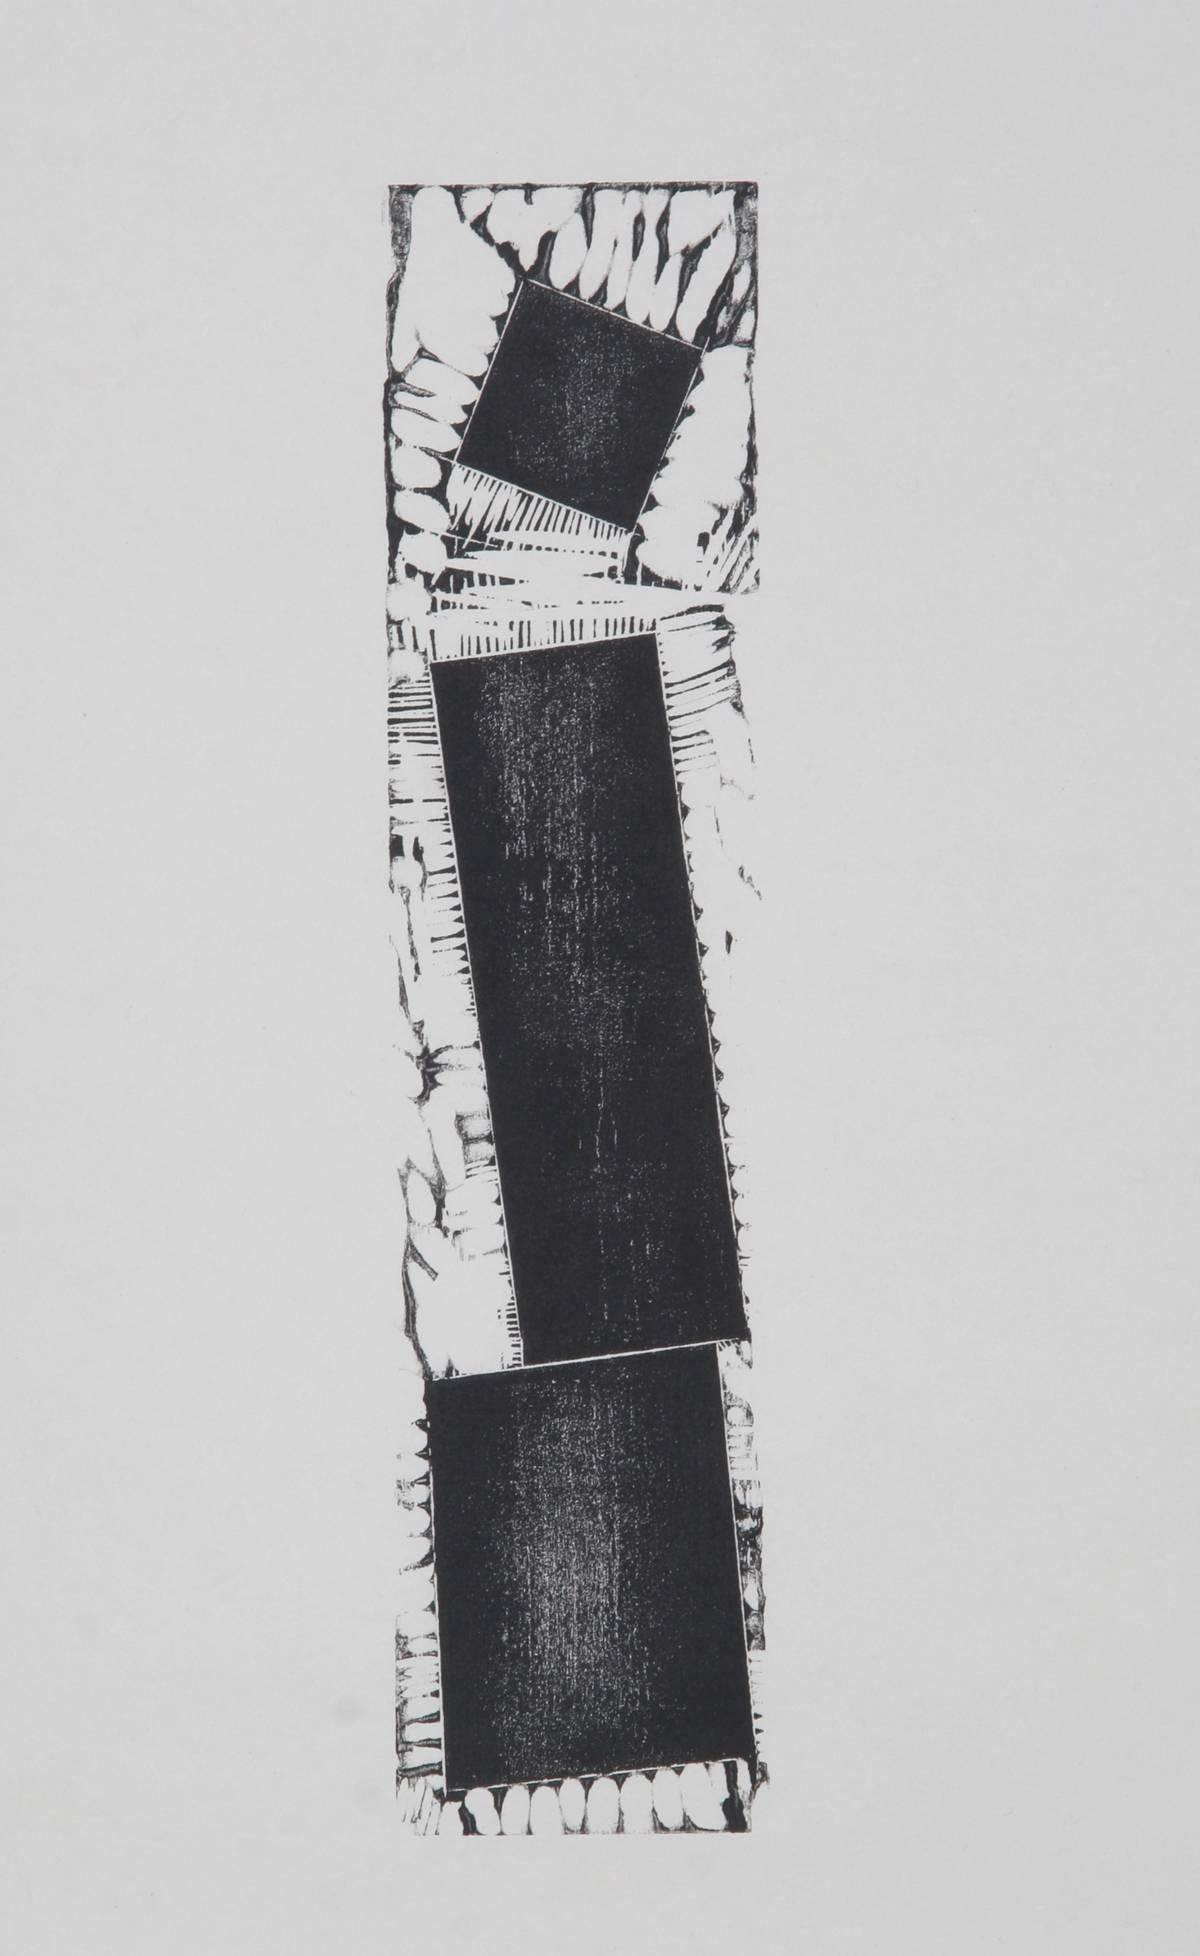 Künstler:	Joel Shapiro
Titel:	Unbenannt
Jahr:	1994
Medium:	Holzschnitt auf handgeschöpftem Papier, mit Bleistift signiert und nummeriert
Auflage:	27/75
Bildgröße: 18 x 4,5 Zoll (46 x 11,5 cm) 
Papierformat: 38 x 26 Zoll (96,5 x 66 cm)